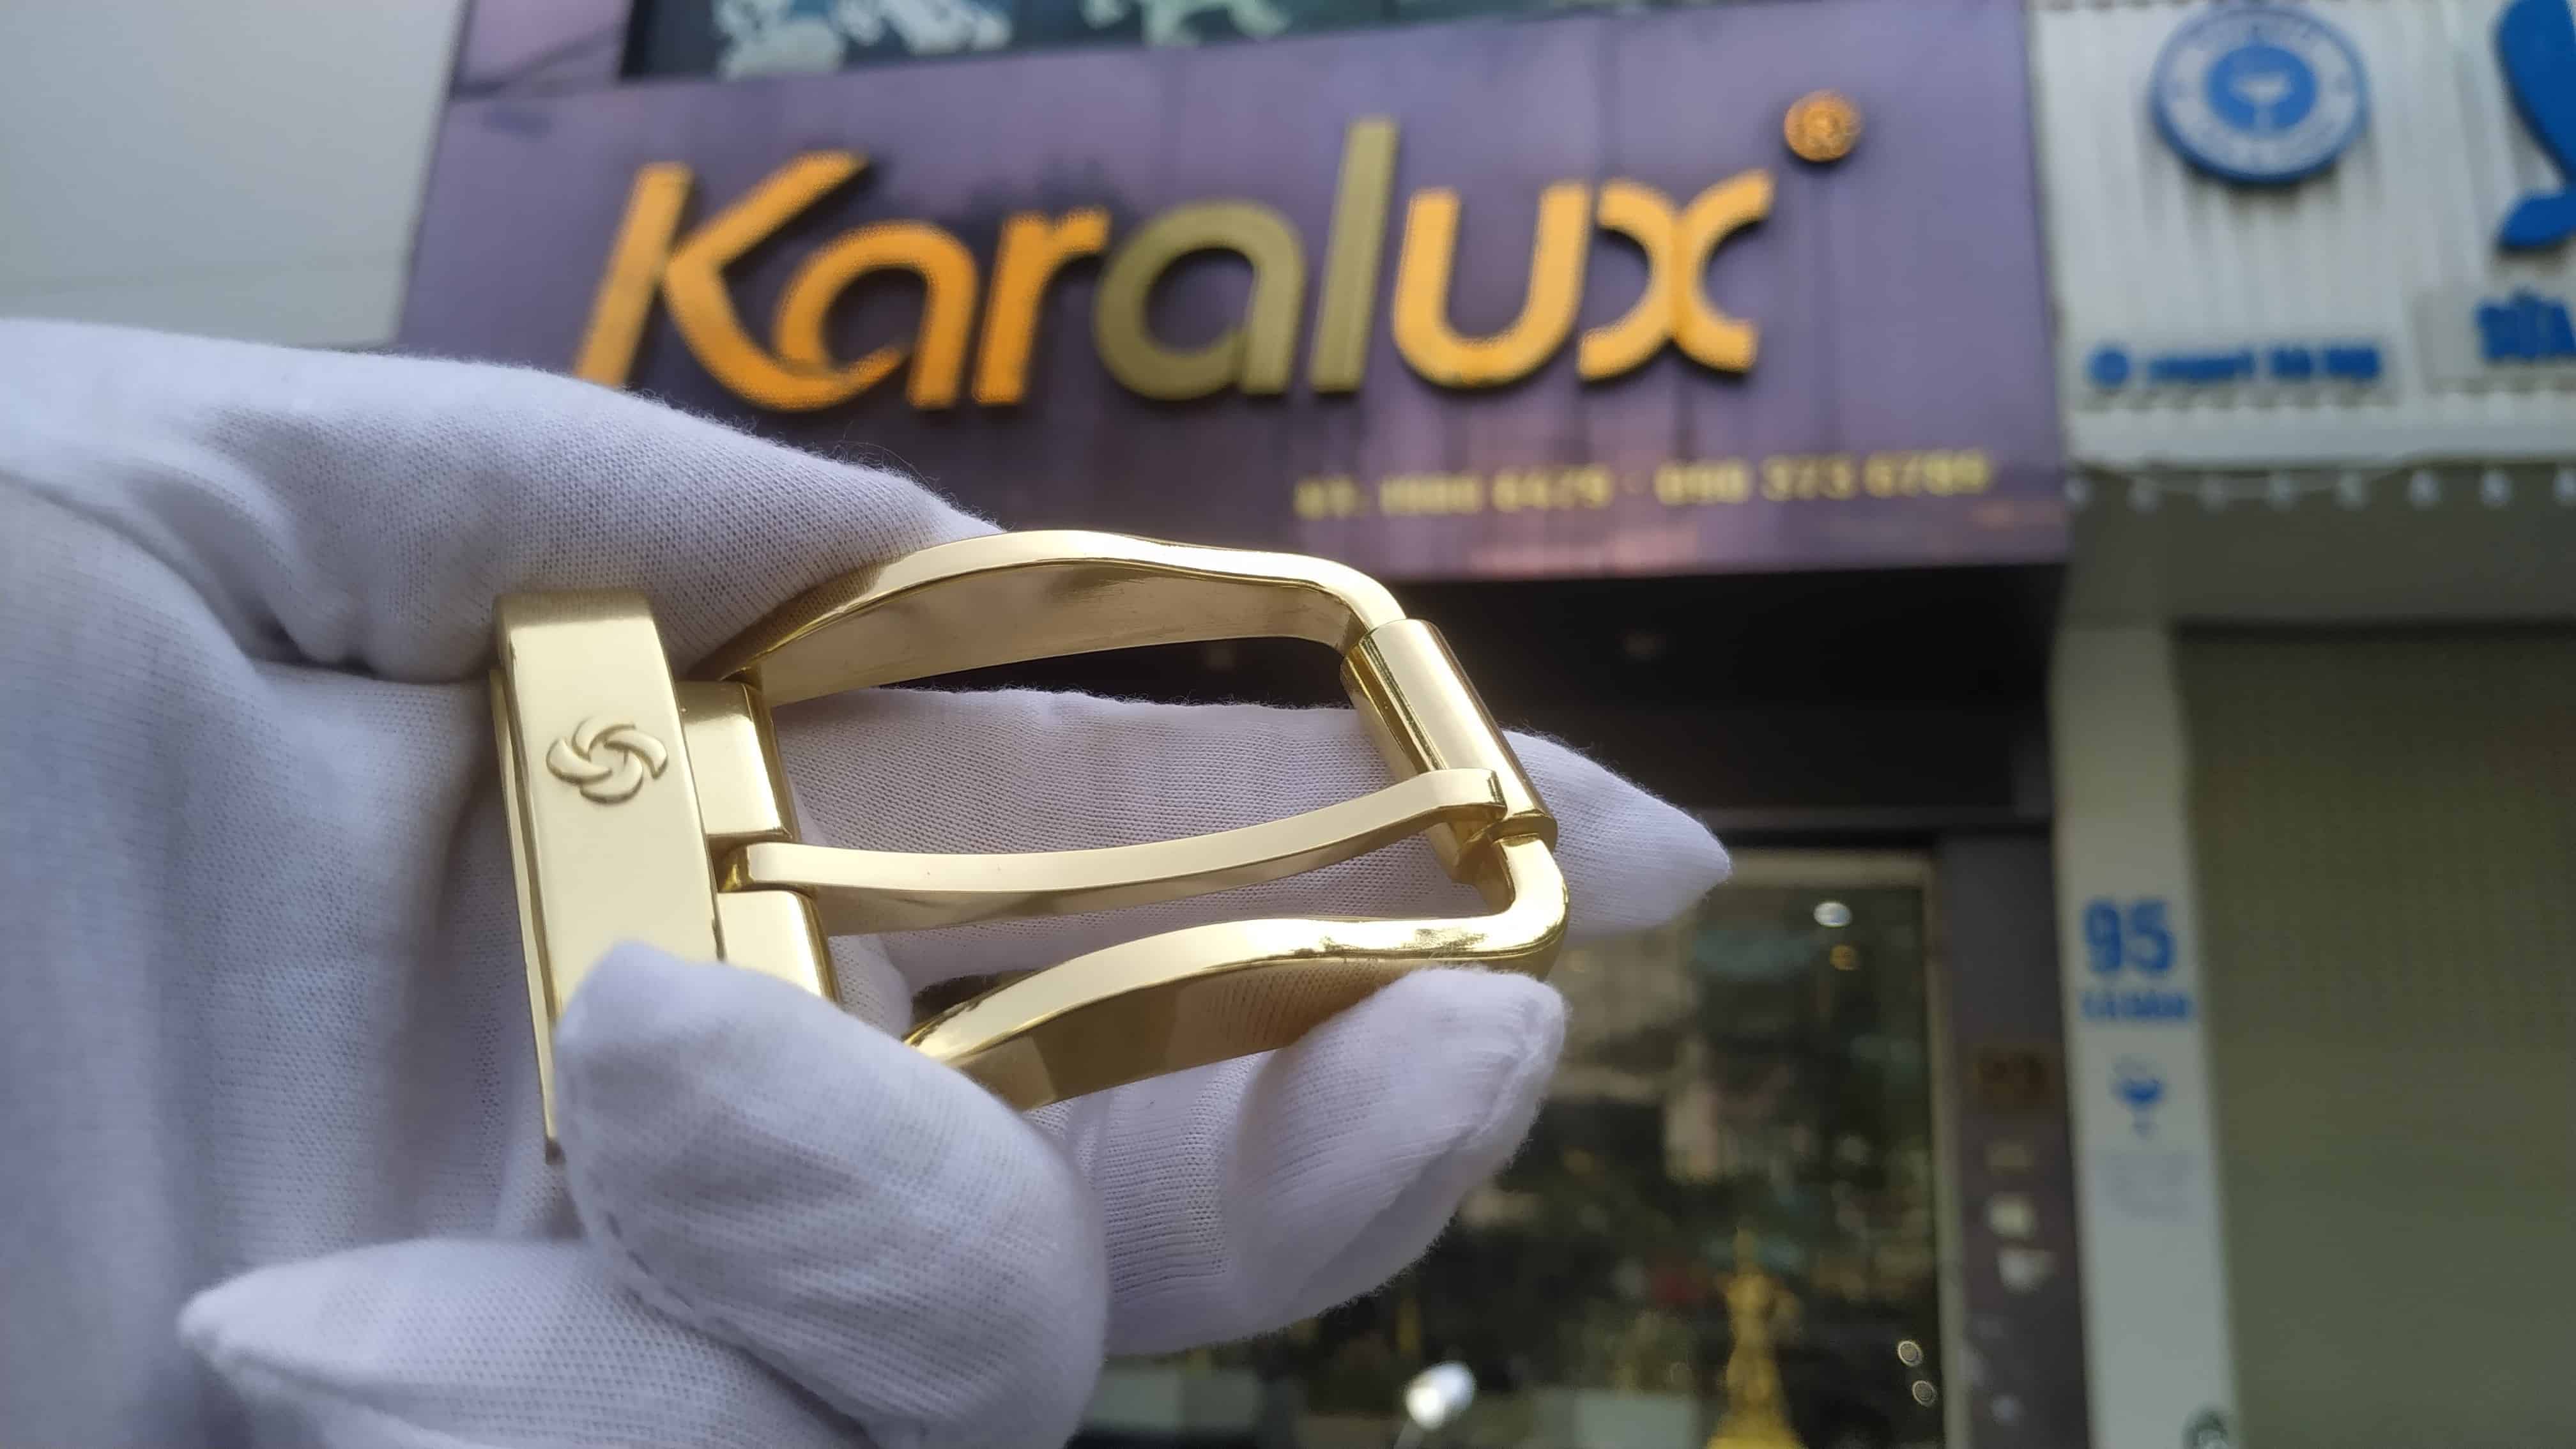 Để xử lý được bề mặt rỗ, mòn, trầy xước trên mặt thắt lưng bằng antimon đòi hỏi kinh nghiệm xử lý bề mặt vật liệu và kỹ thuật mạ vàng cứng Pre Gold của kỹ sư Karalux để đảm bảo độ bền và sáng bóng sau khi mạ.